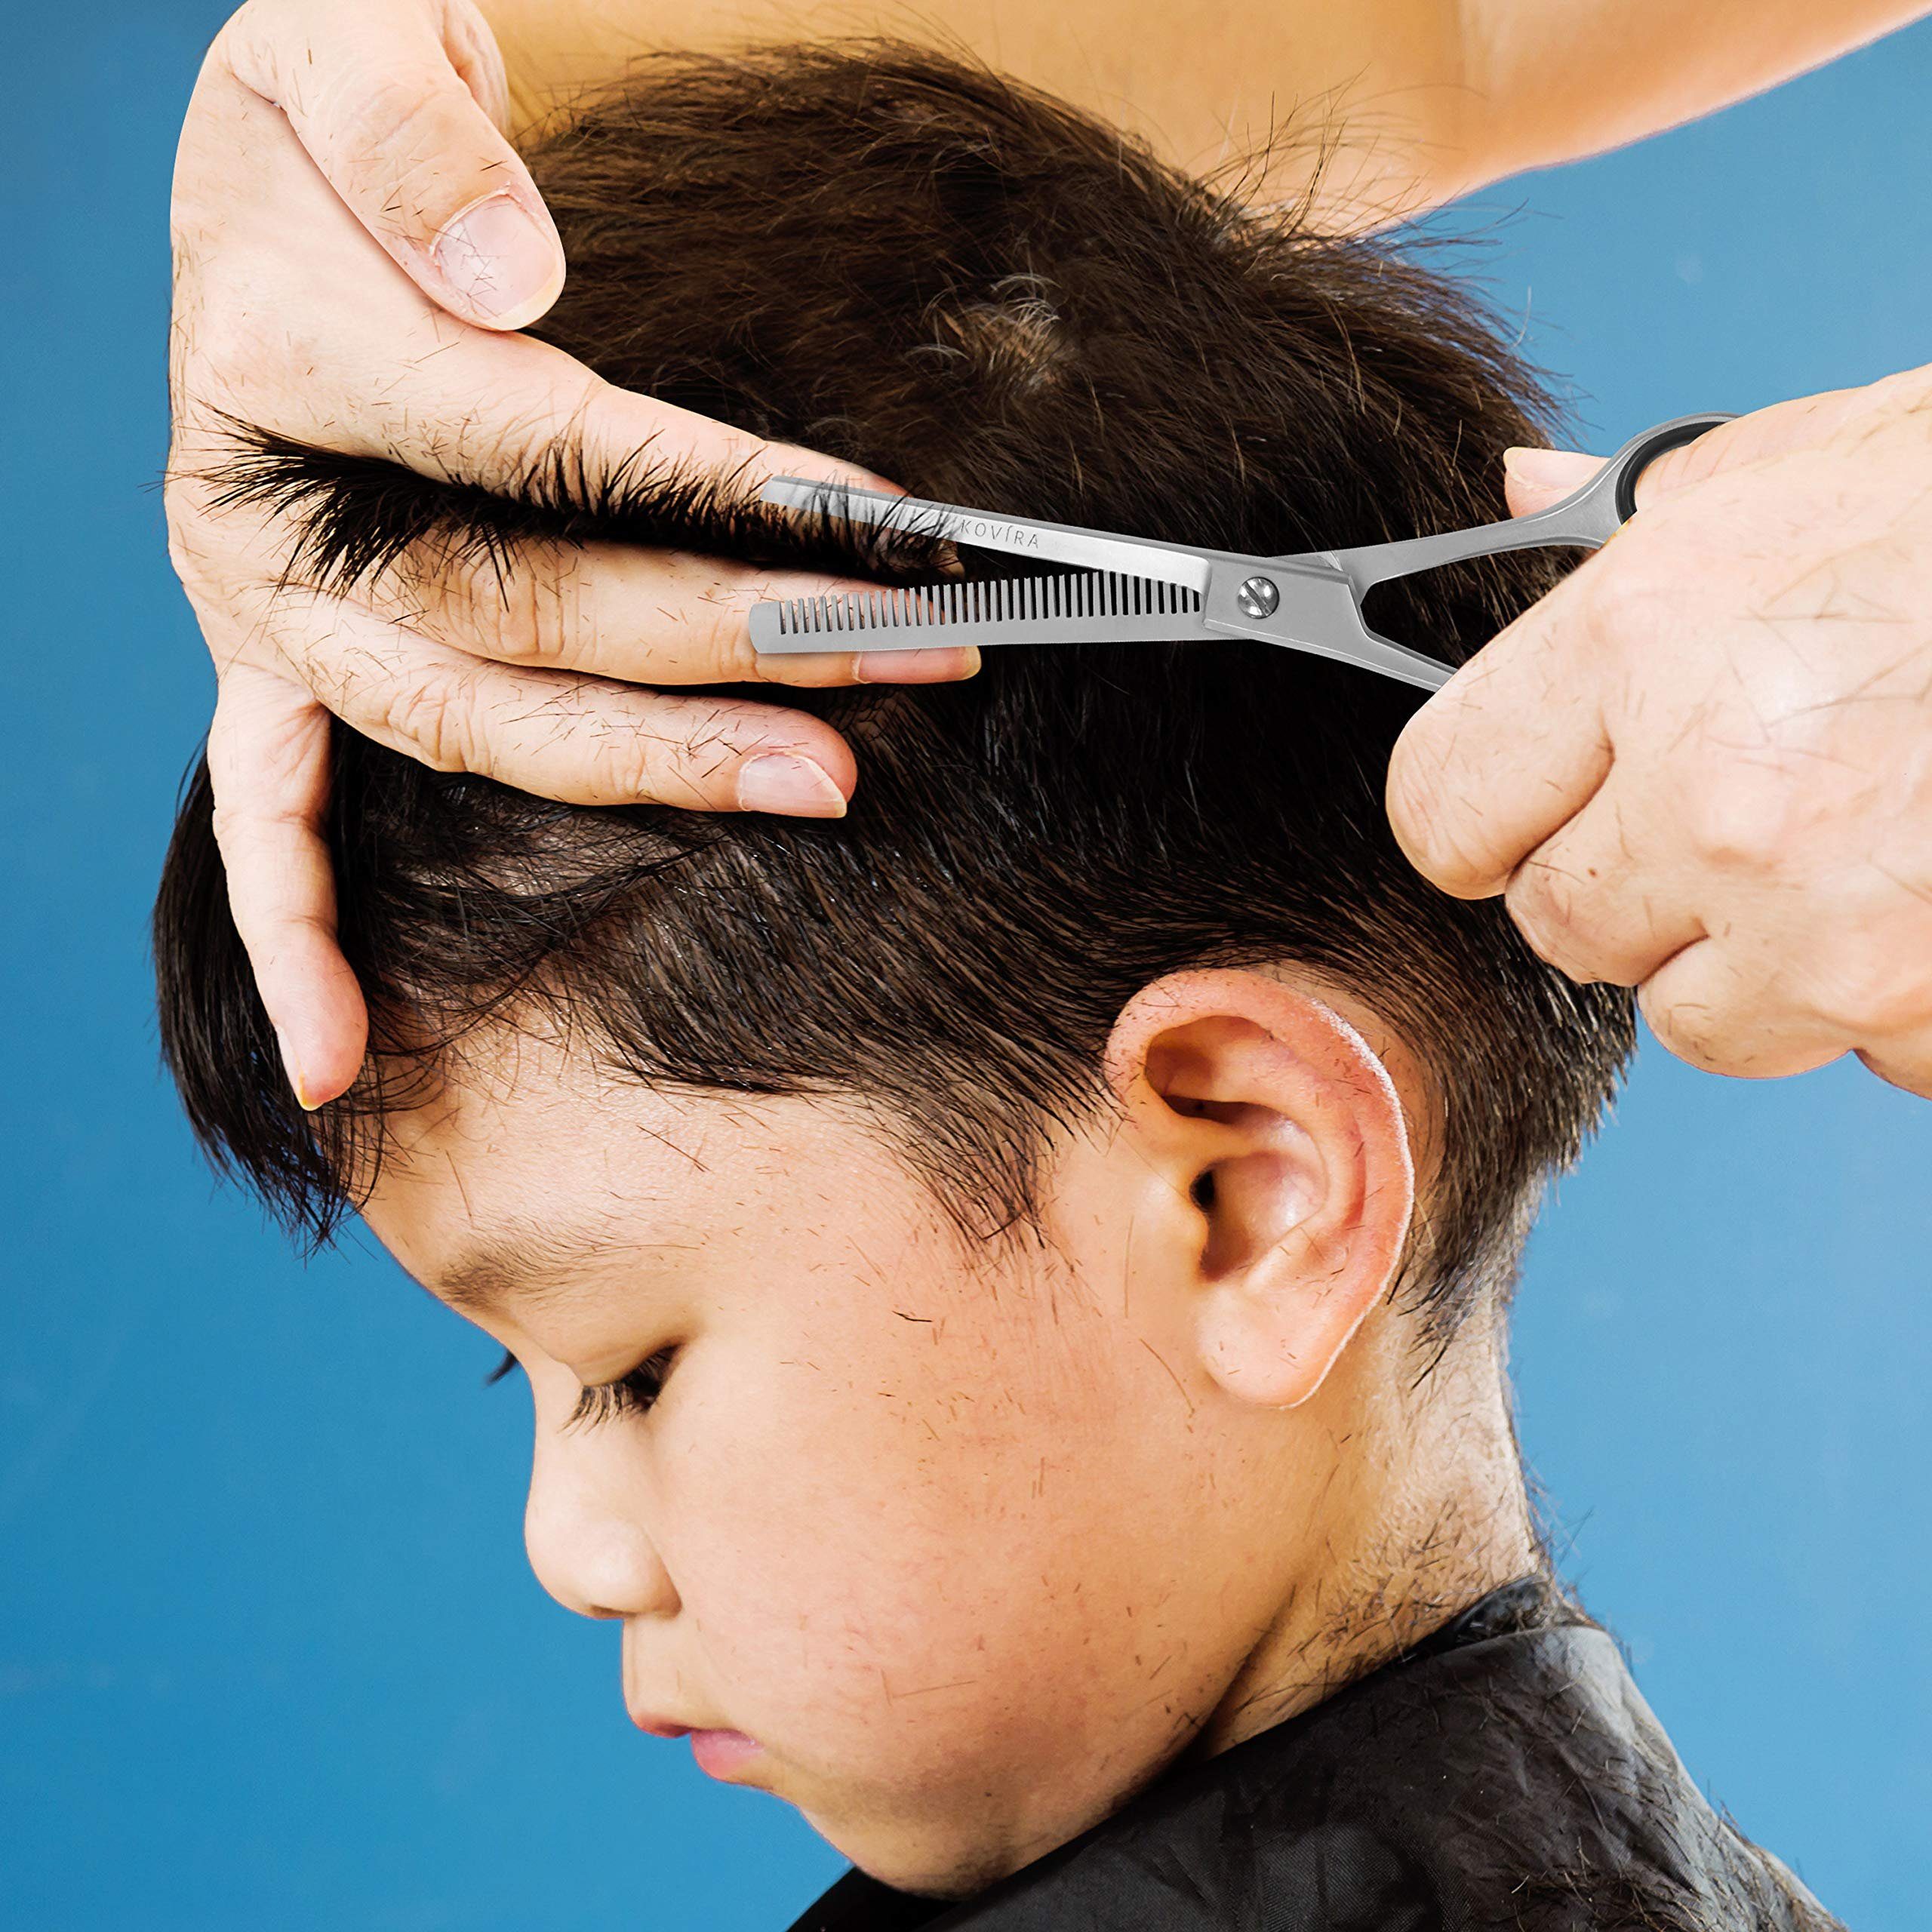 für Friseurscheren Set Ausdünnungsscheren und Friseure, Kovira schneiden Set Haare und ausdünnen Haarschneide- für Nagelknipser